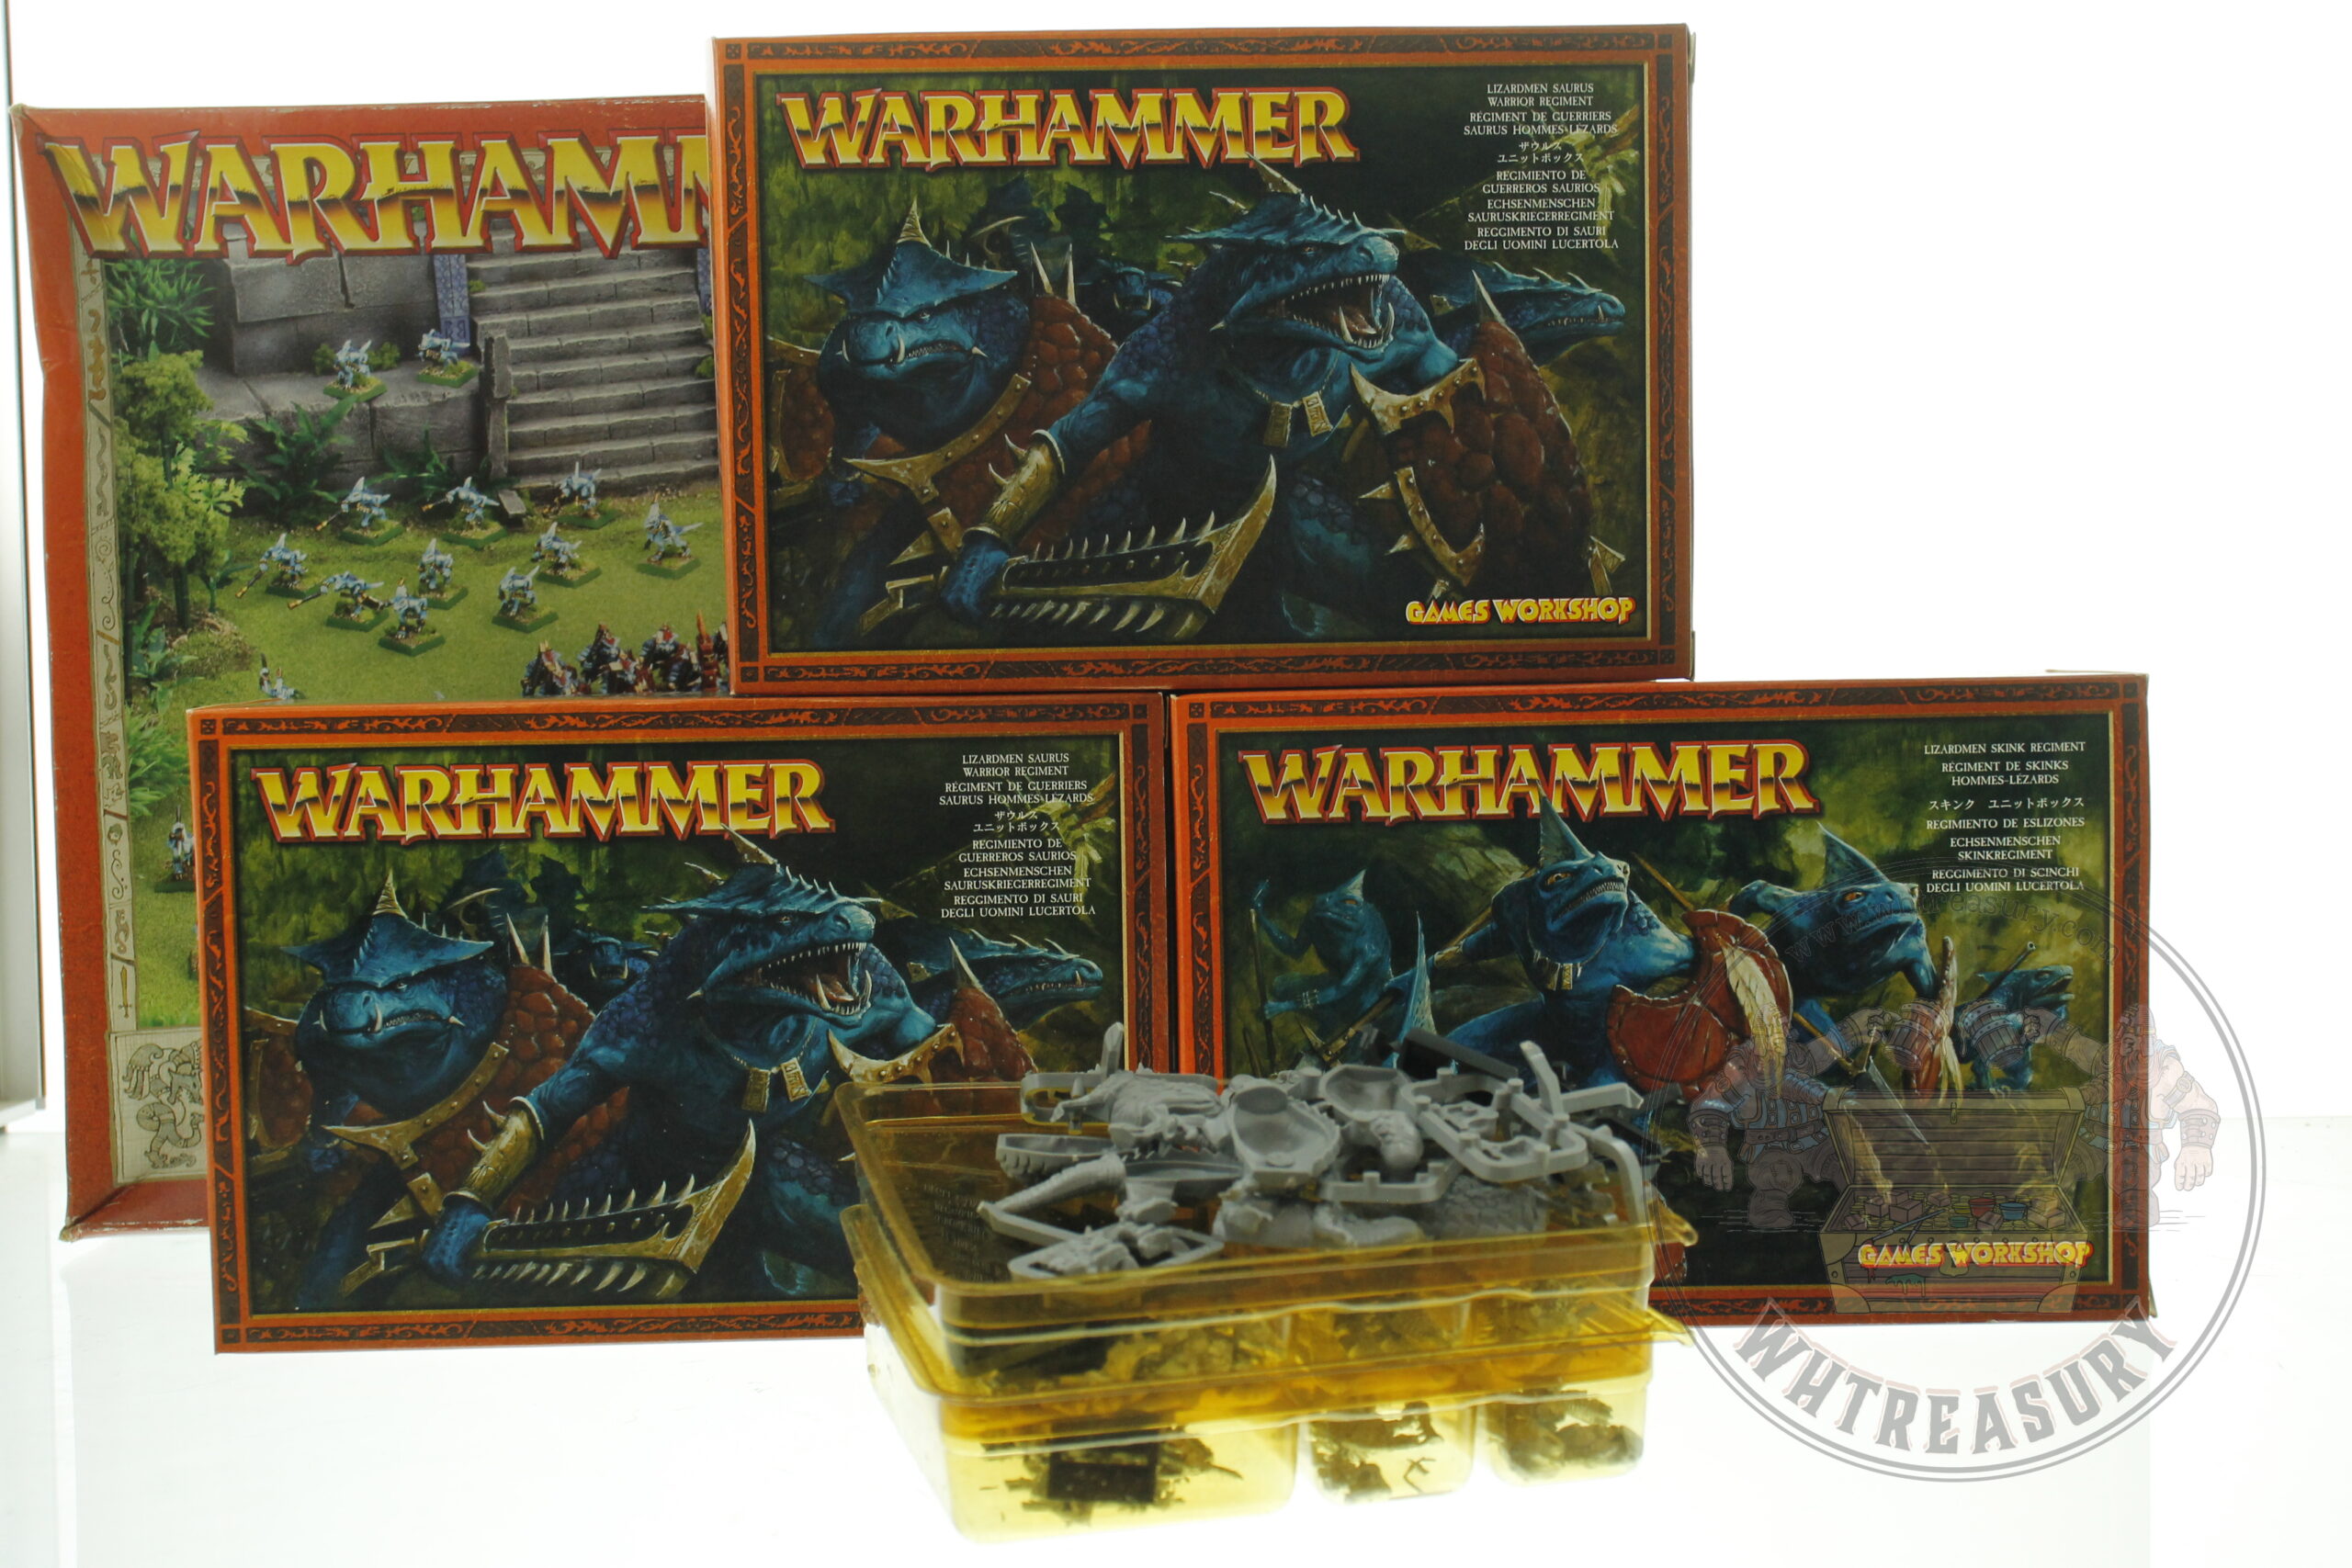 Warhammer Fantasy Lizardmen Army Box | WHTREASURY